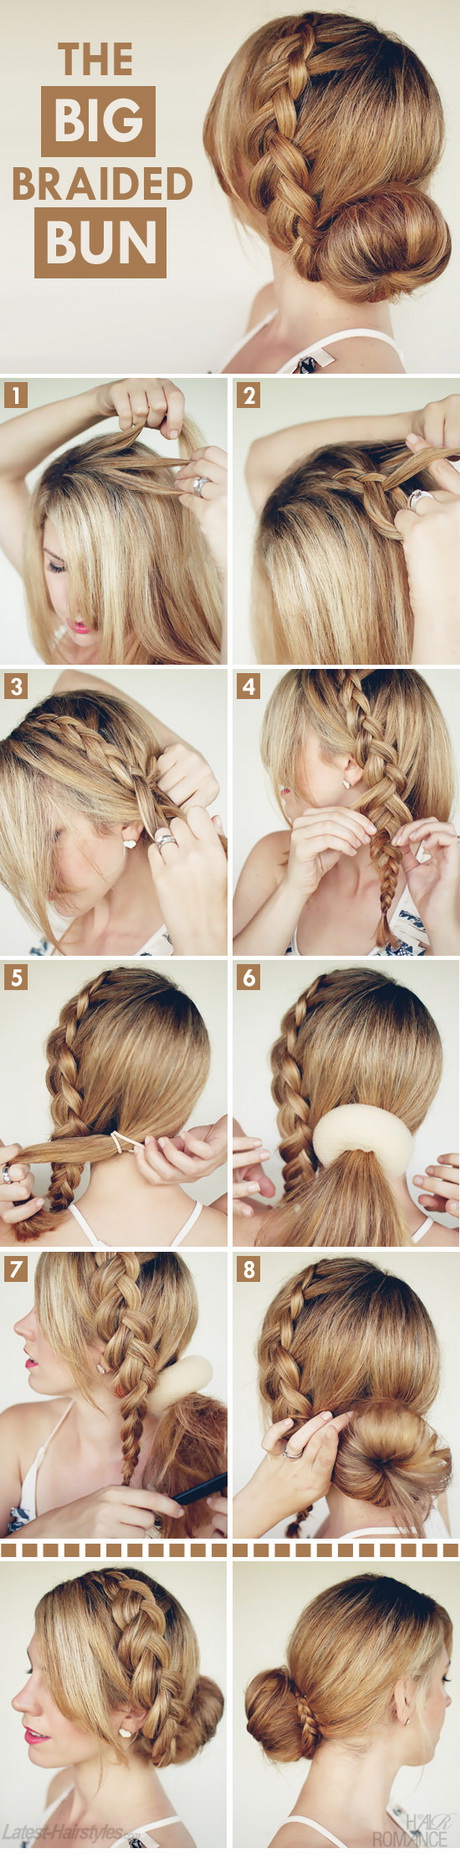 braided-bun-hairstyles-80-19 Braided bun hairstyles